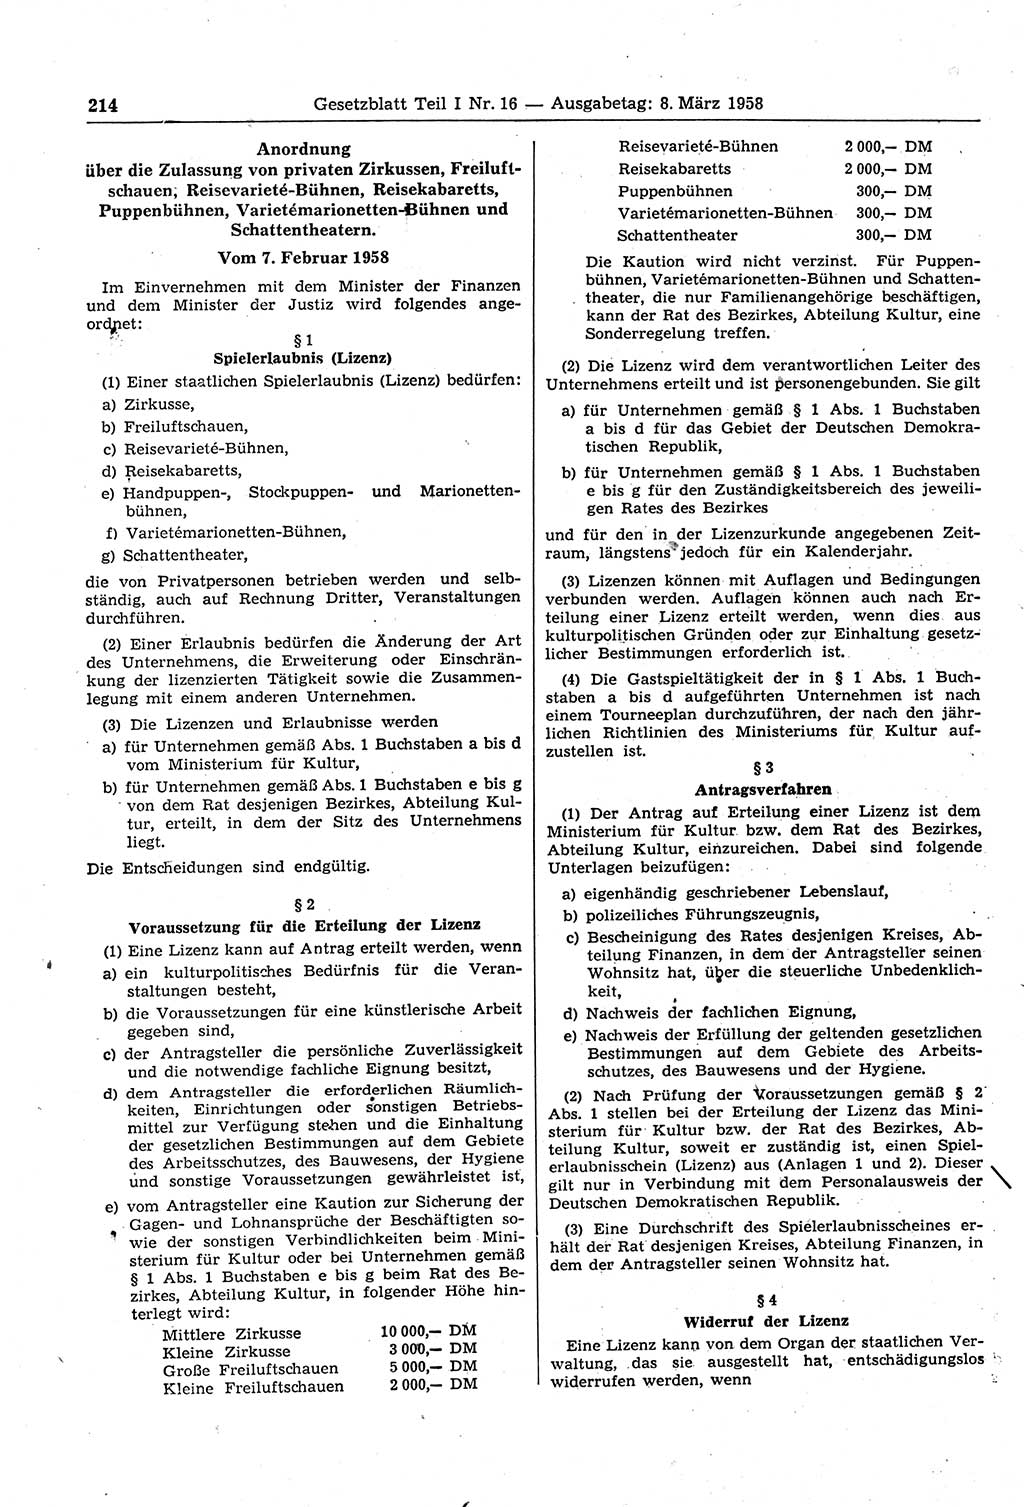 Gesetzblatt (GBl.) der Deutschen Demokratischen Republik (DDR) Teil Ⅰ 1958, Seite 214 (GBl. DDR Ⅰ 1958, S. 214)